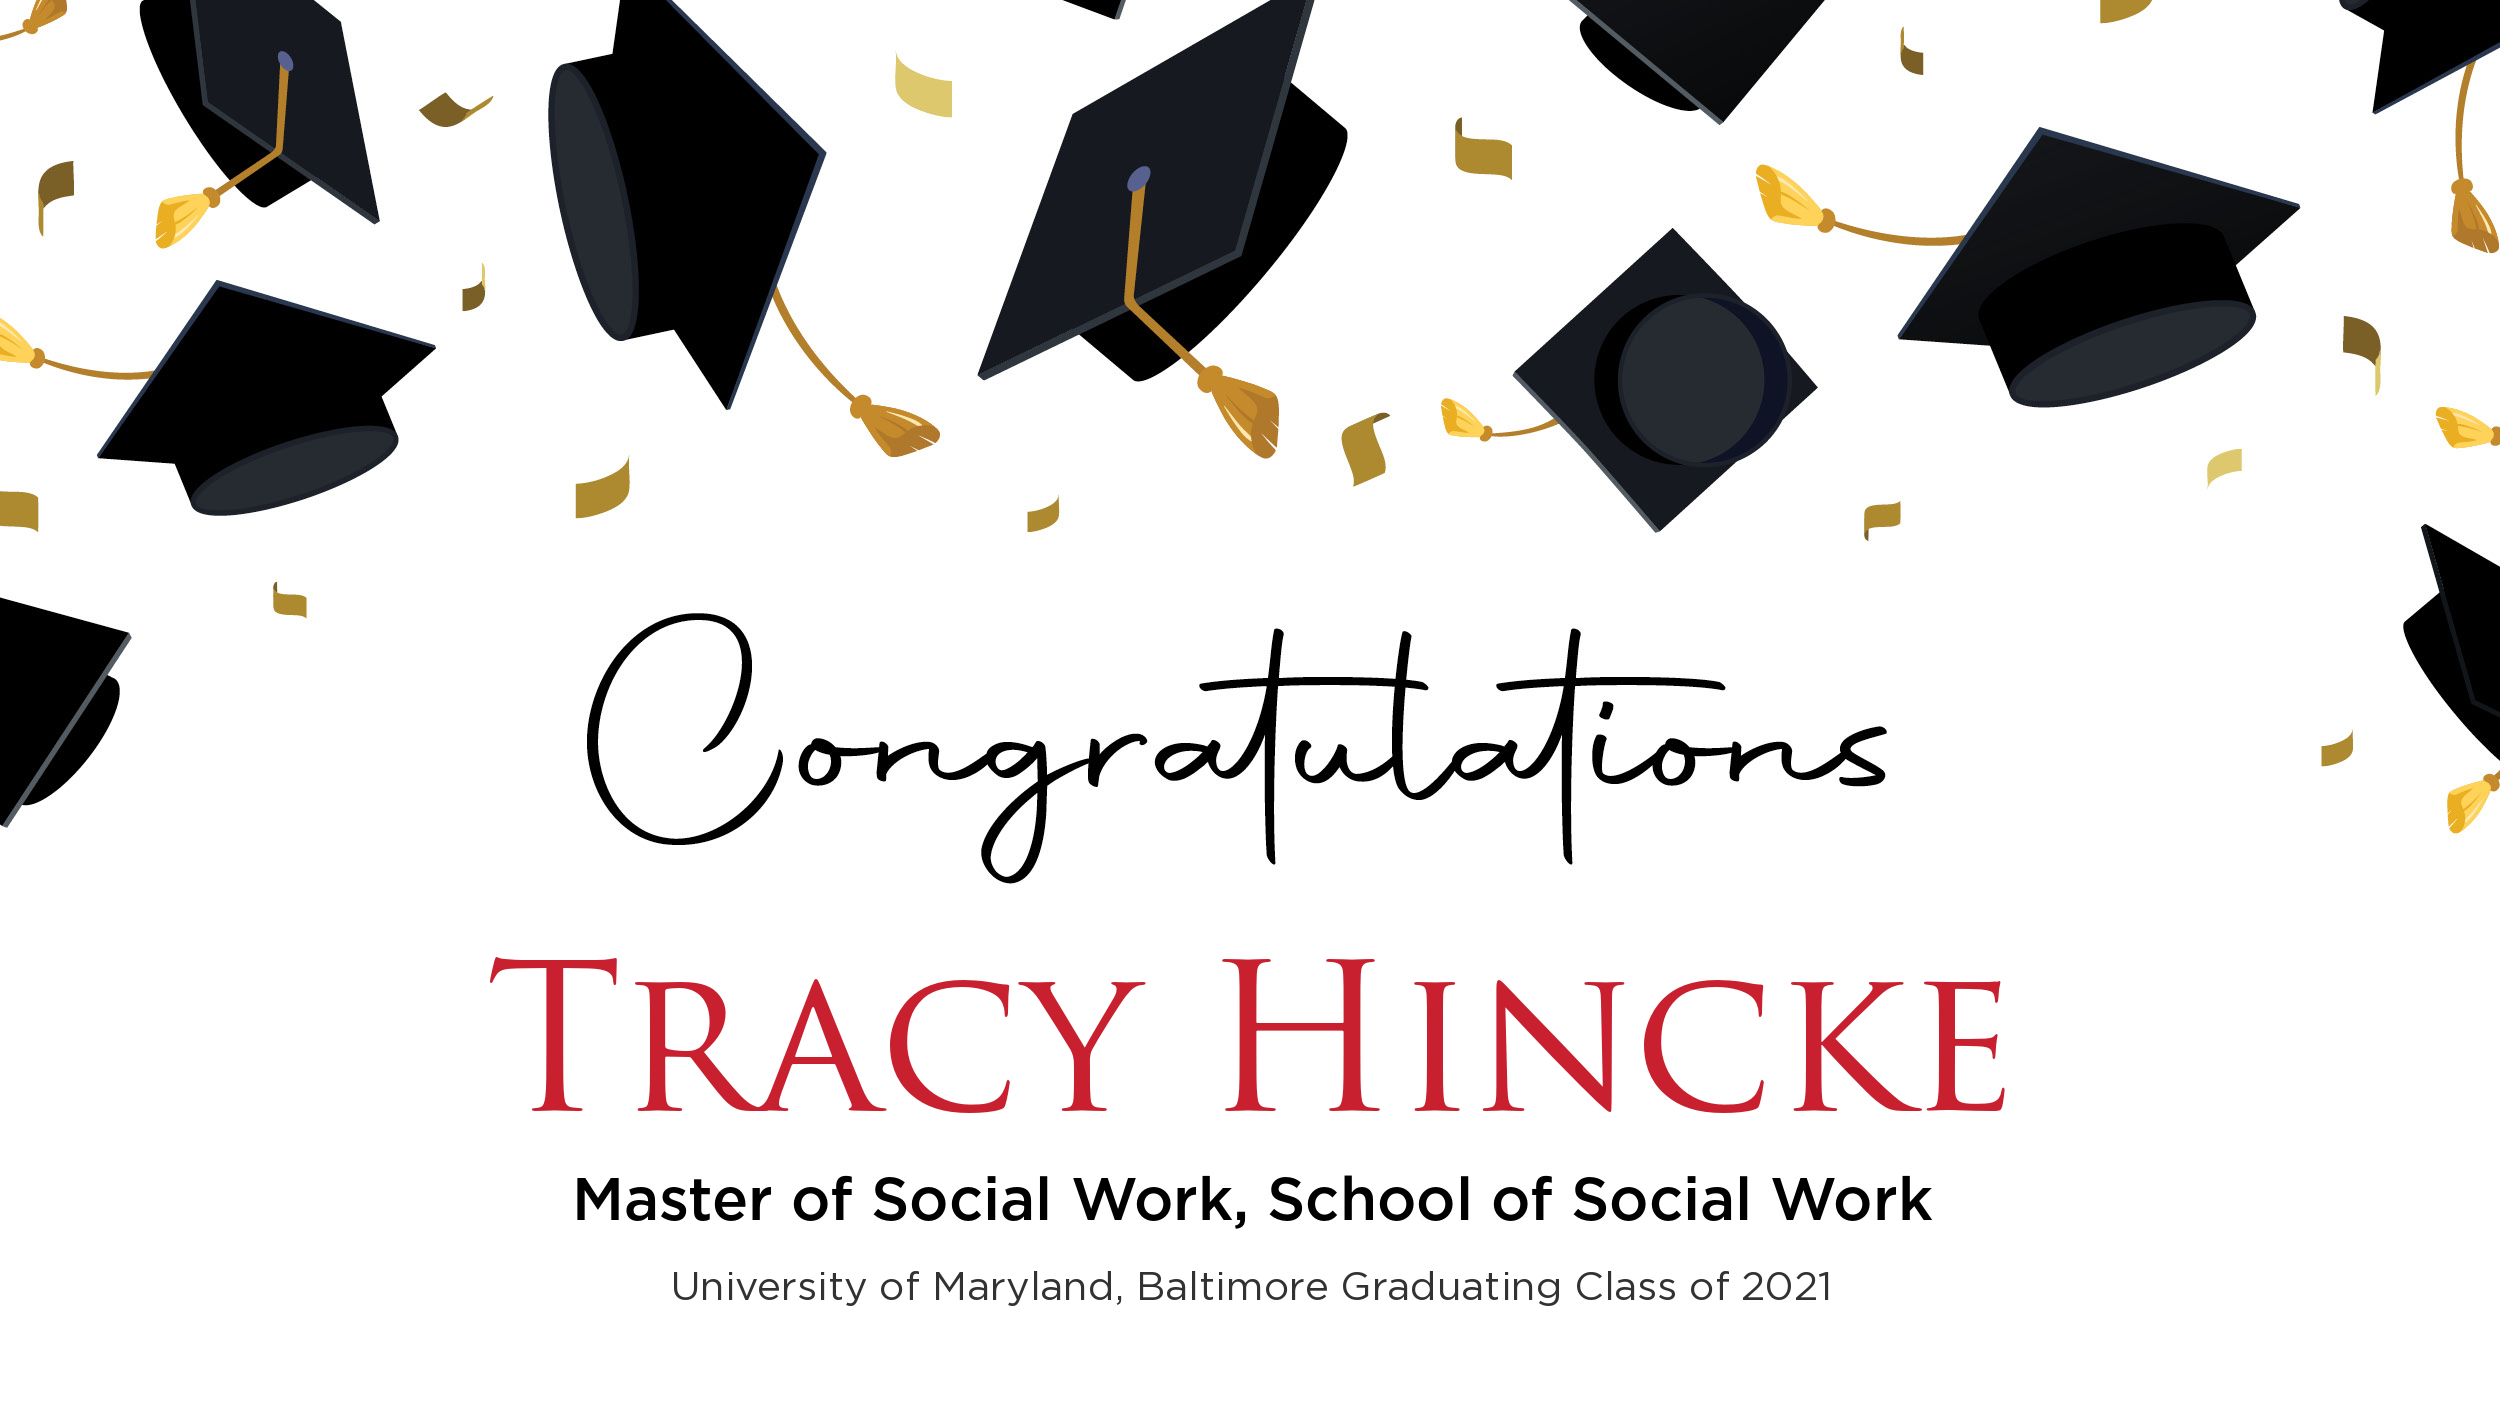 Congratulations Tracy Hincke, Master of Social Work